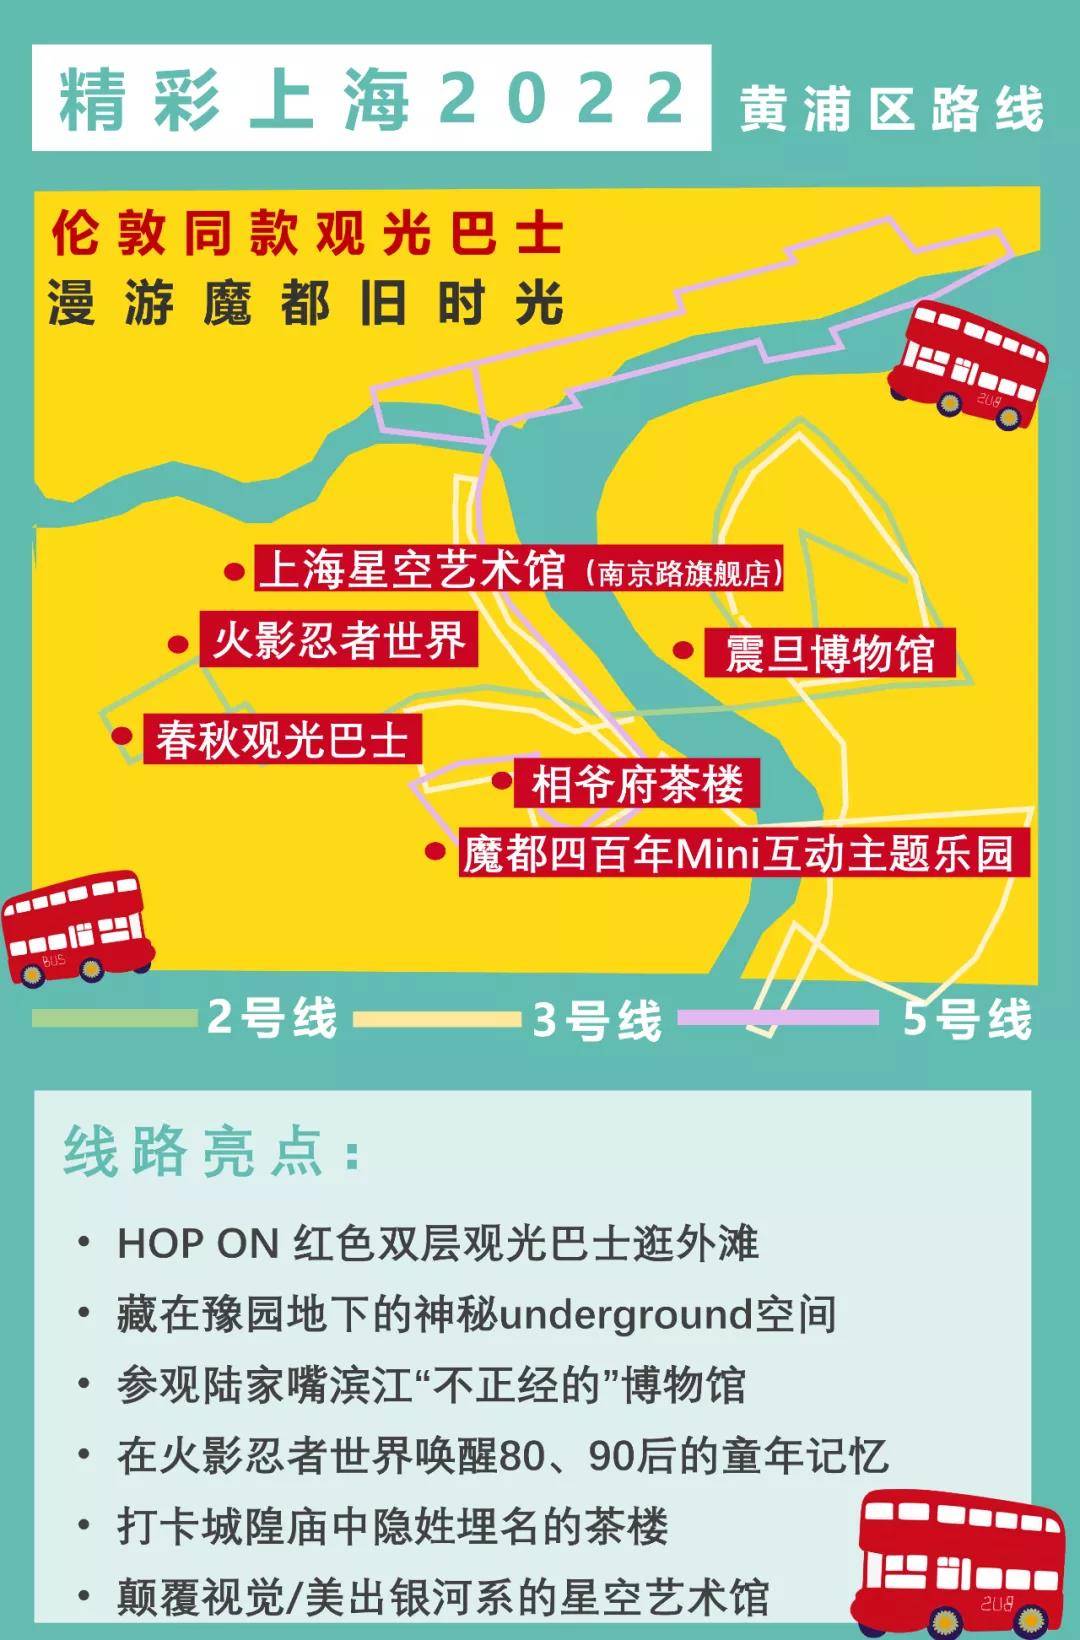 足不出沪，即买即用！上海旅游节特惠！99元抢精彩上海2022旅游联票，不到百元玩转魔都一整年，平均每天不到3毛钱！